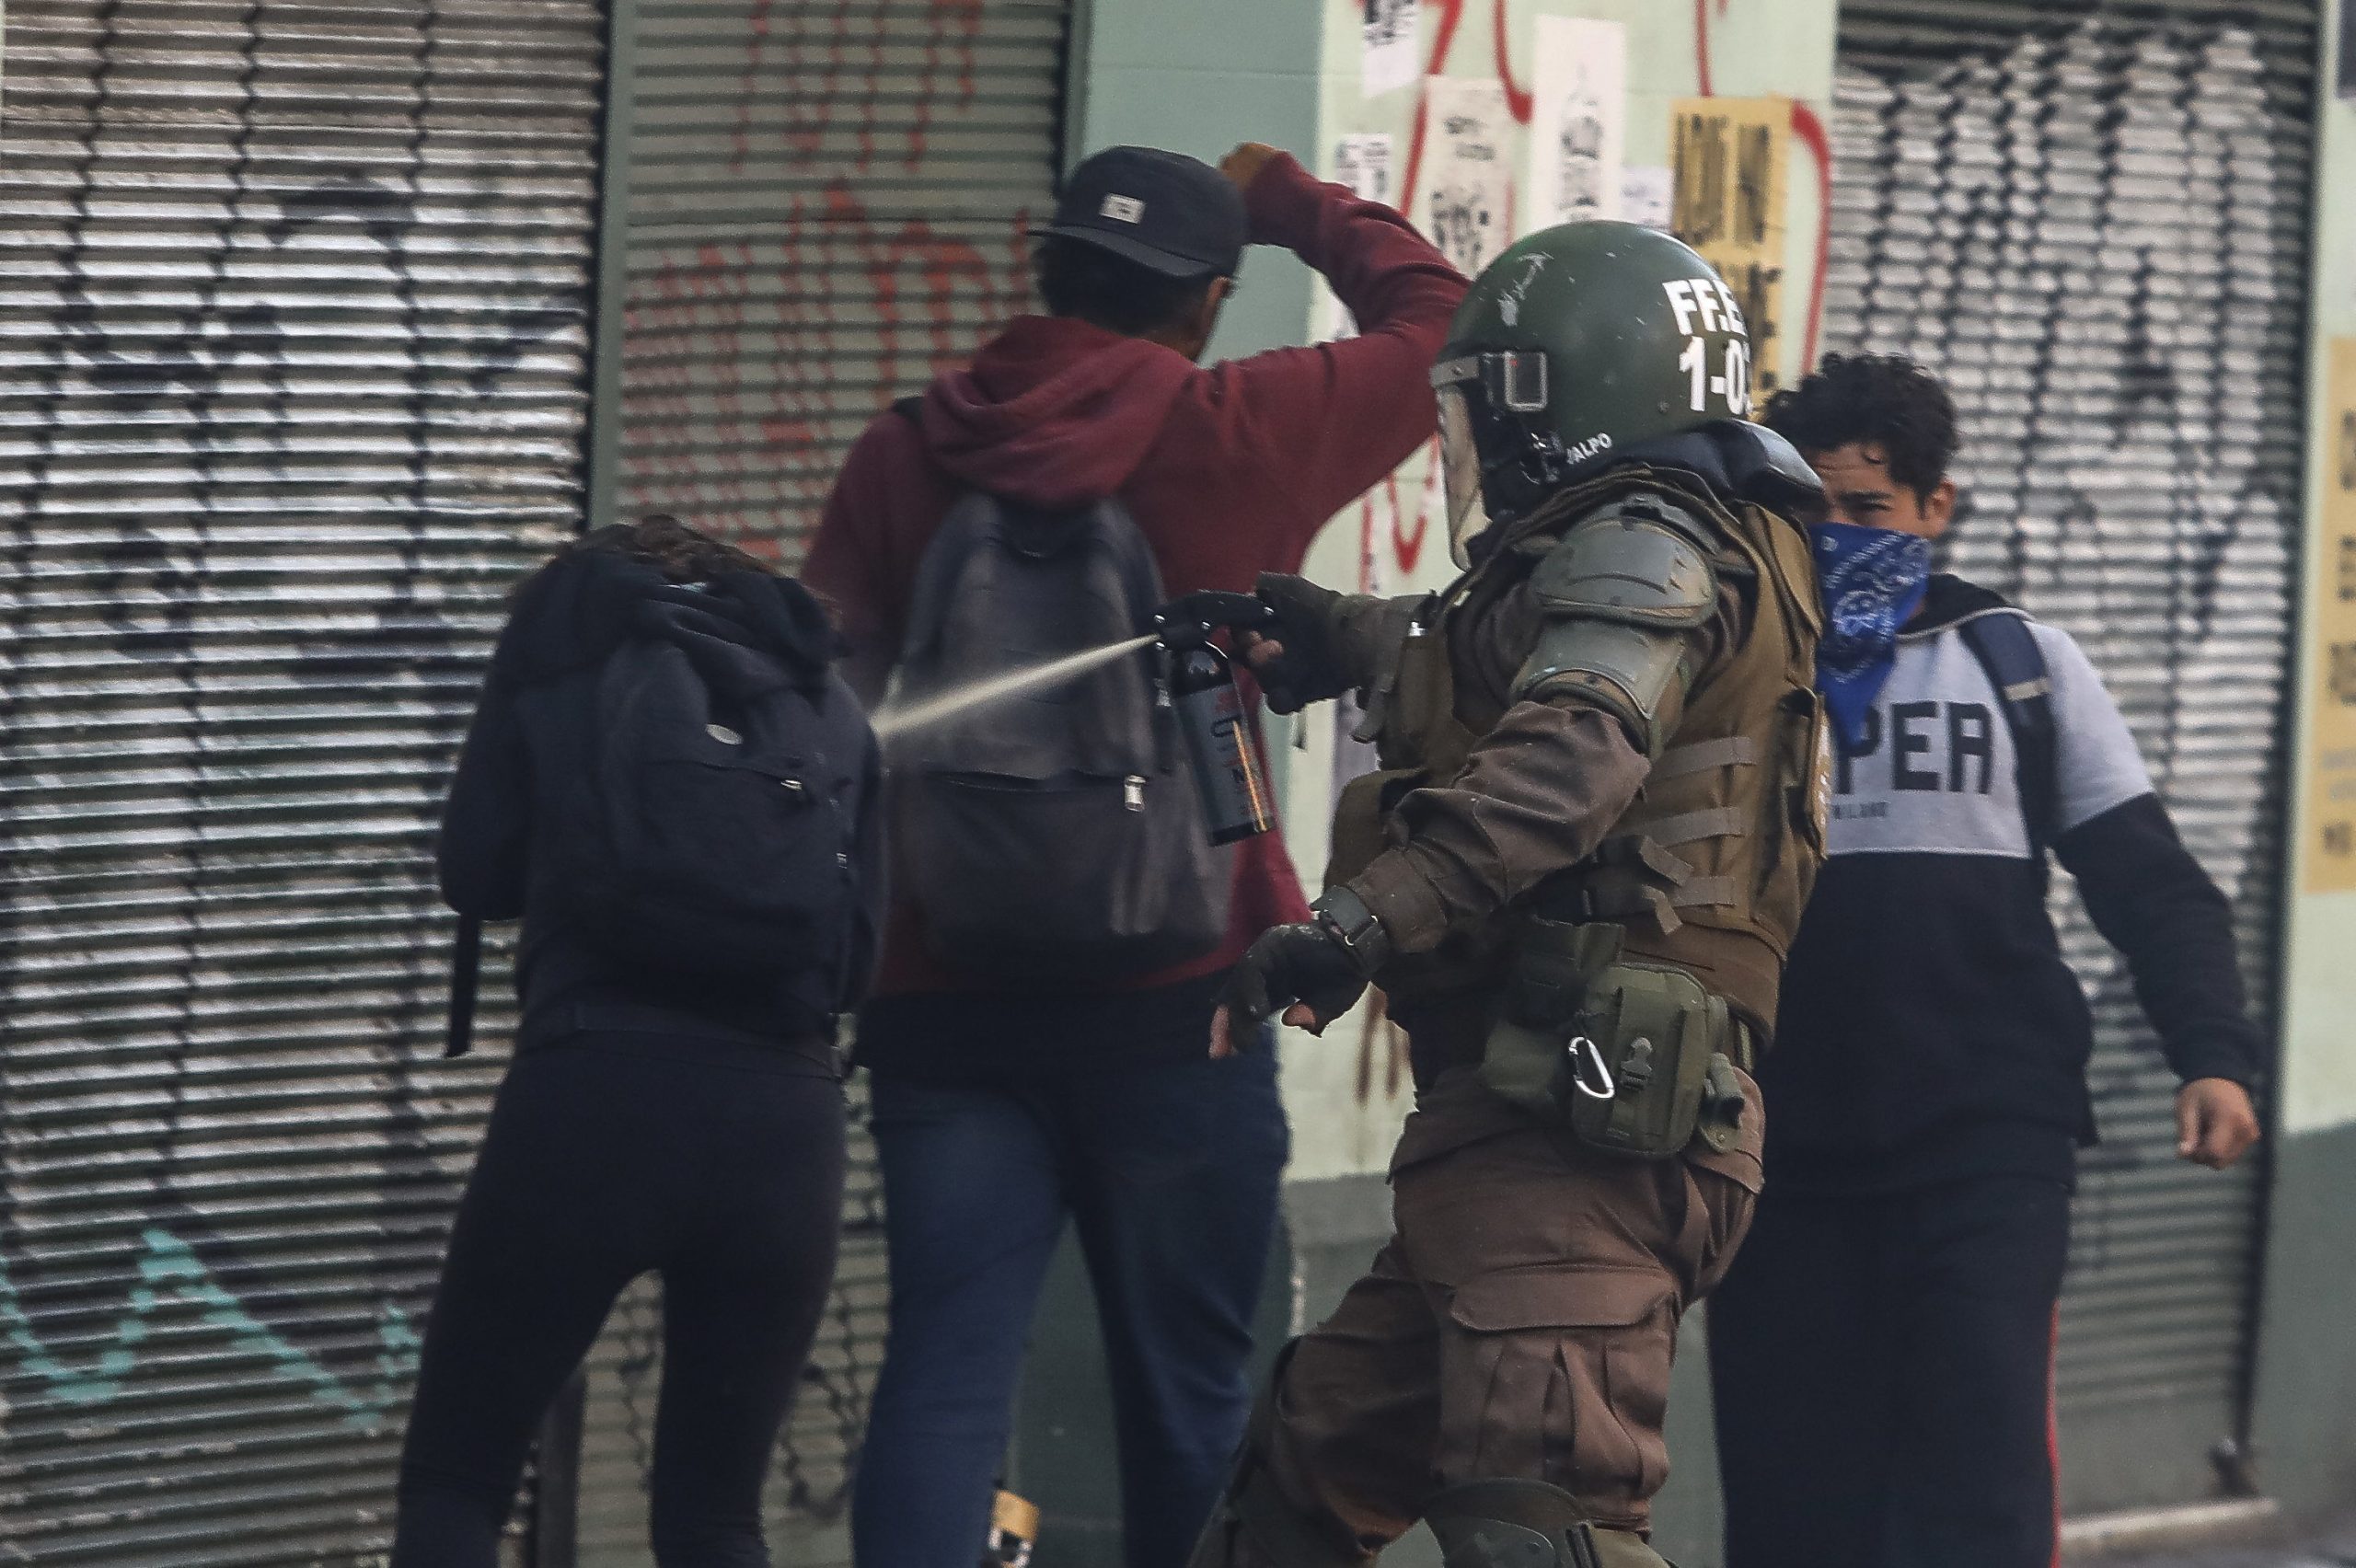  Grupo Parlamentario para la Promoción, Protección y Defensa de los Derechos Humanos de Ecuador expresa preocupación por la represión policial en Chile